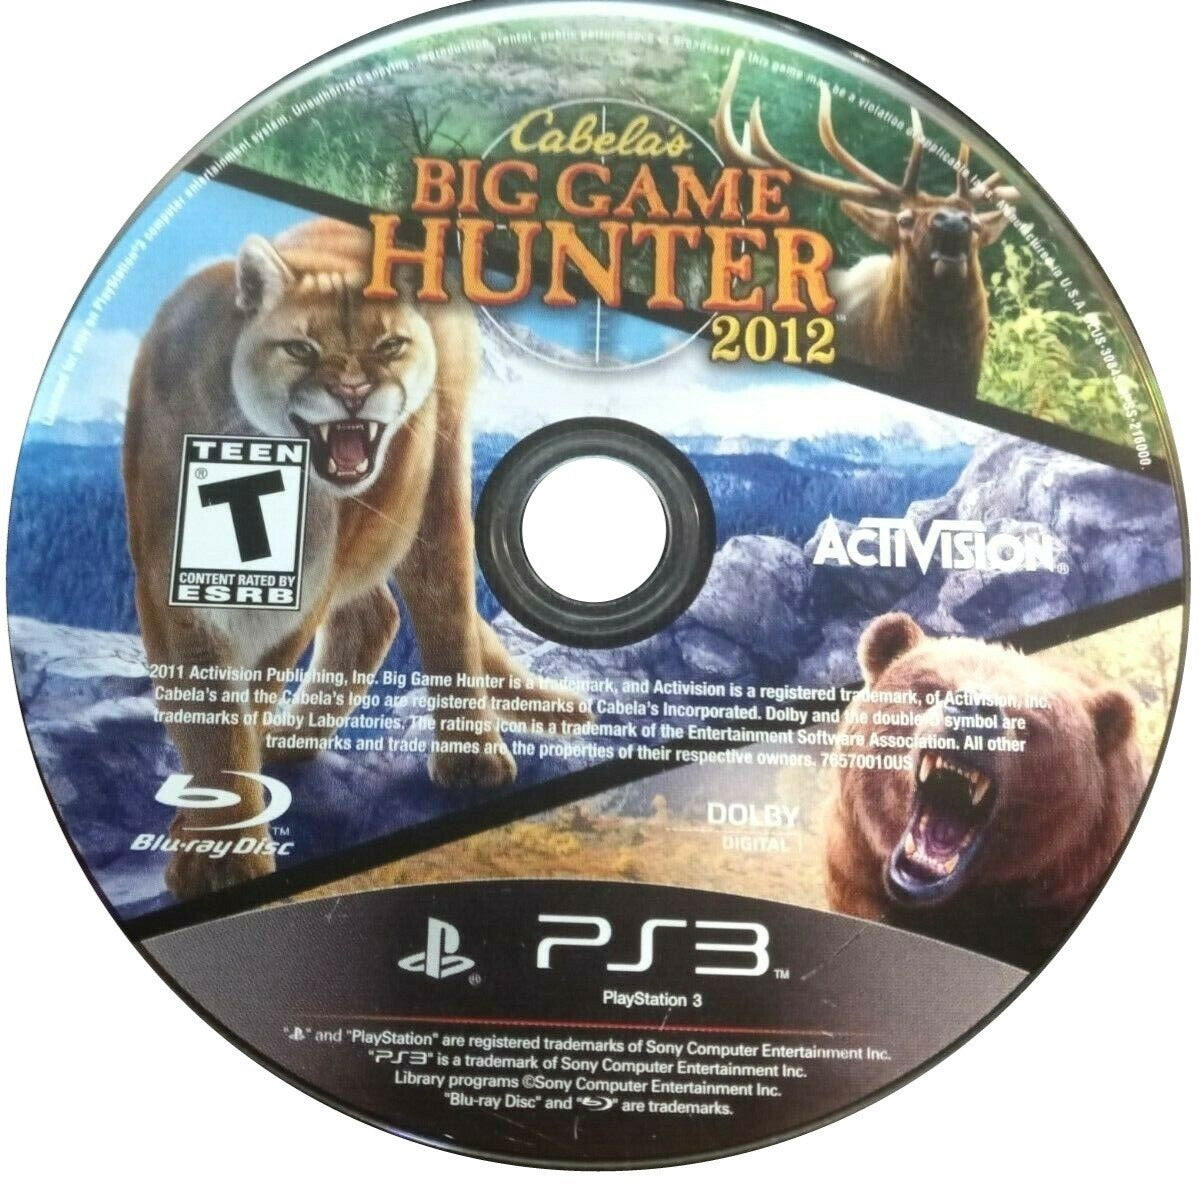 Cabela's Big Game Hunter 2012 - PlayStation 3 (PS3) Game